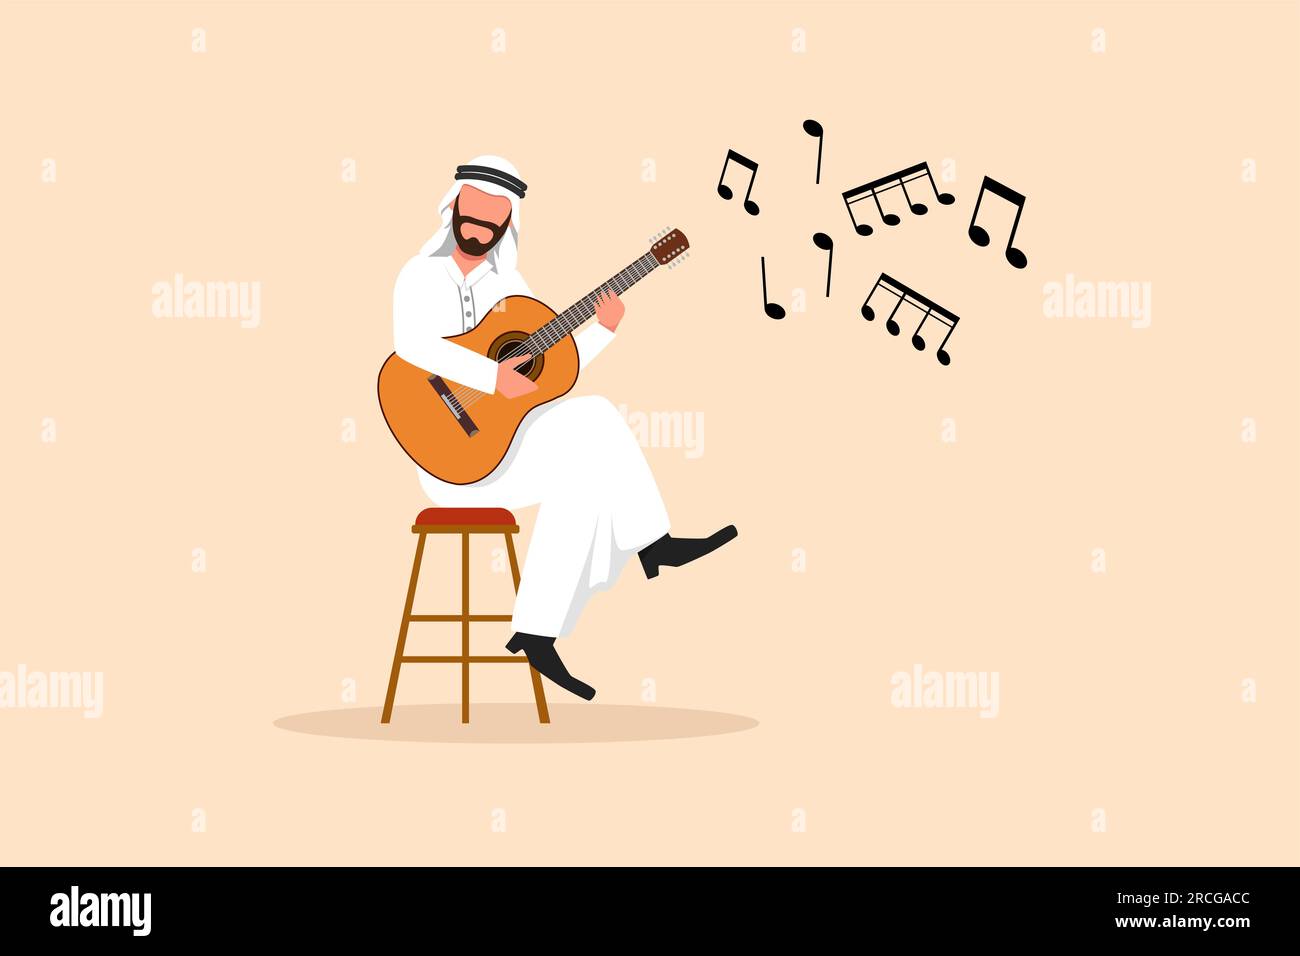 Dessin plat d'affaires jeune homme arabe personnage assis et jouant de la guitare acoustique. Homme arabe jouant des cordes lors d'une performance musicale. Professionnel Banque D'Images